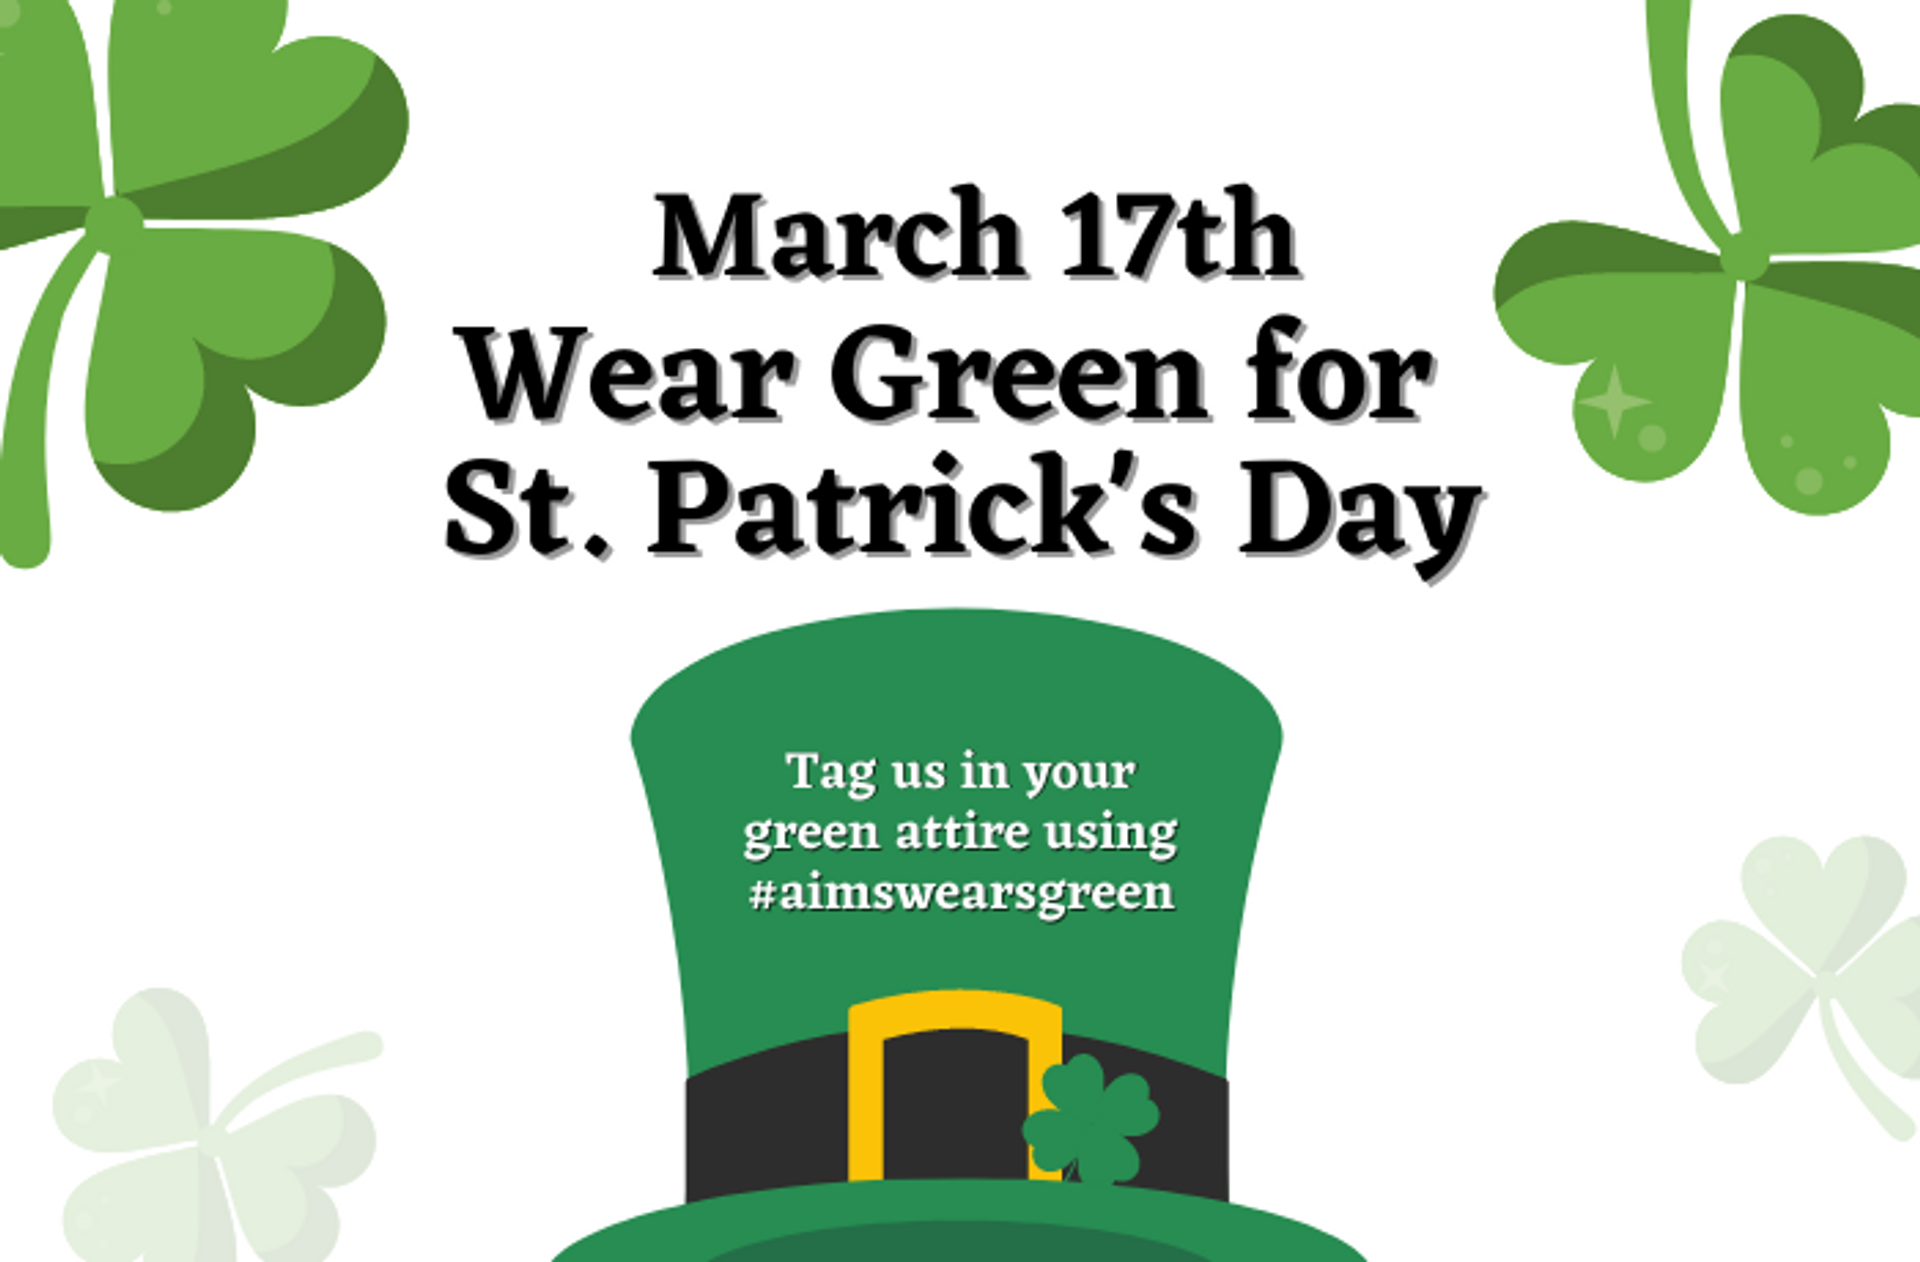 Wear Green! Happy Saint Patrick's Day in 2023